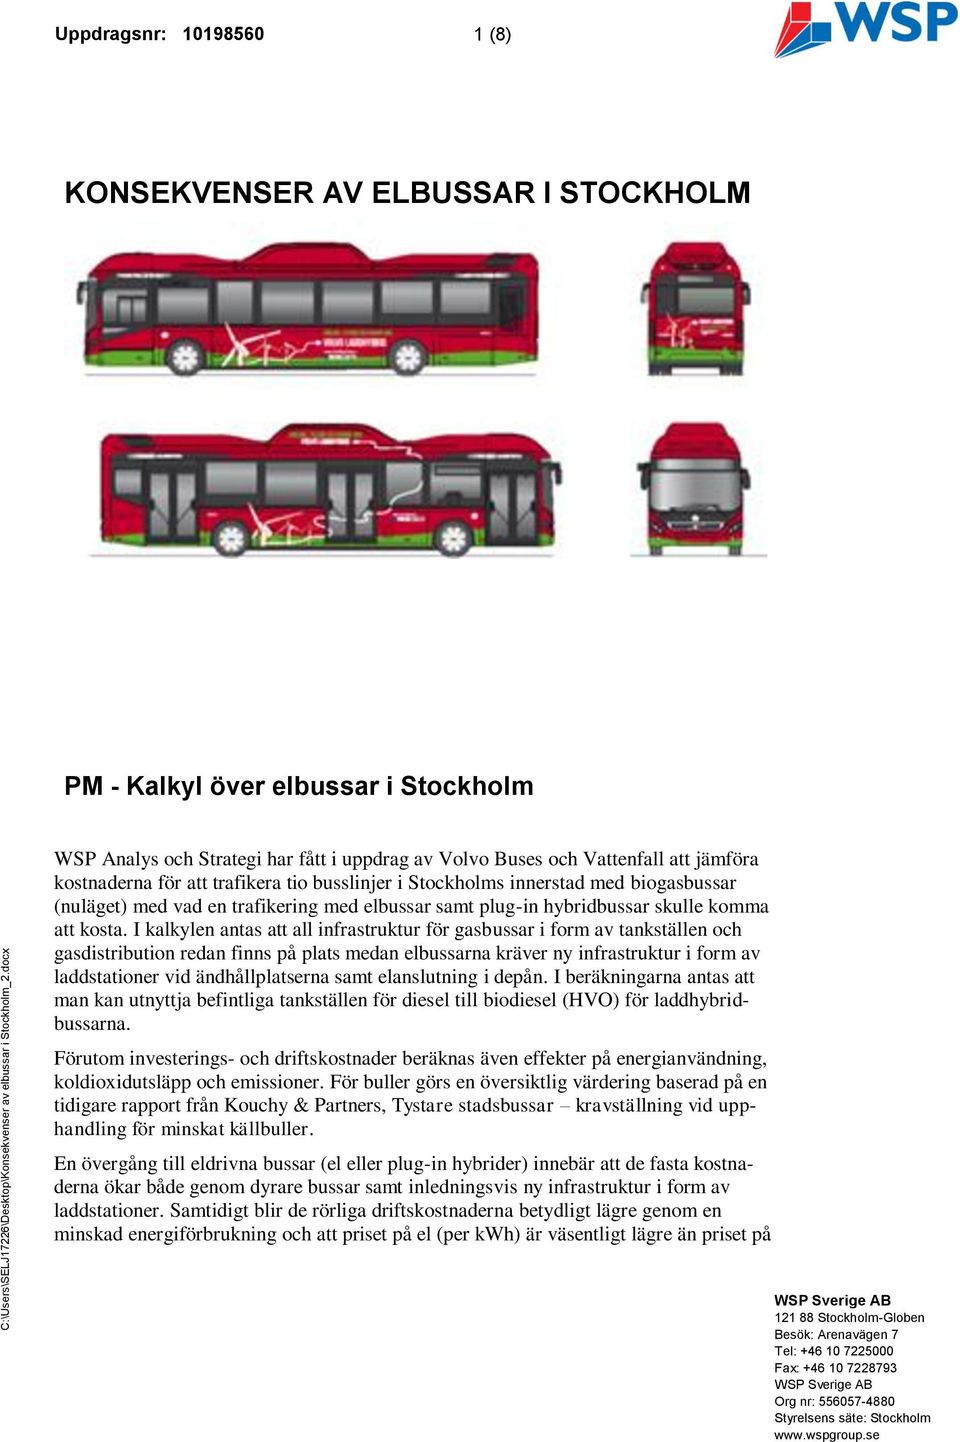 kostnaderna för att trafikera tio busslinjer i Stockholms innerstad med biogasbussar (nuläget) med vad en trafikering med elbussar samt plug-in hybridbussar skulle komma att kosta.